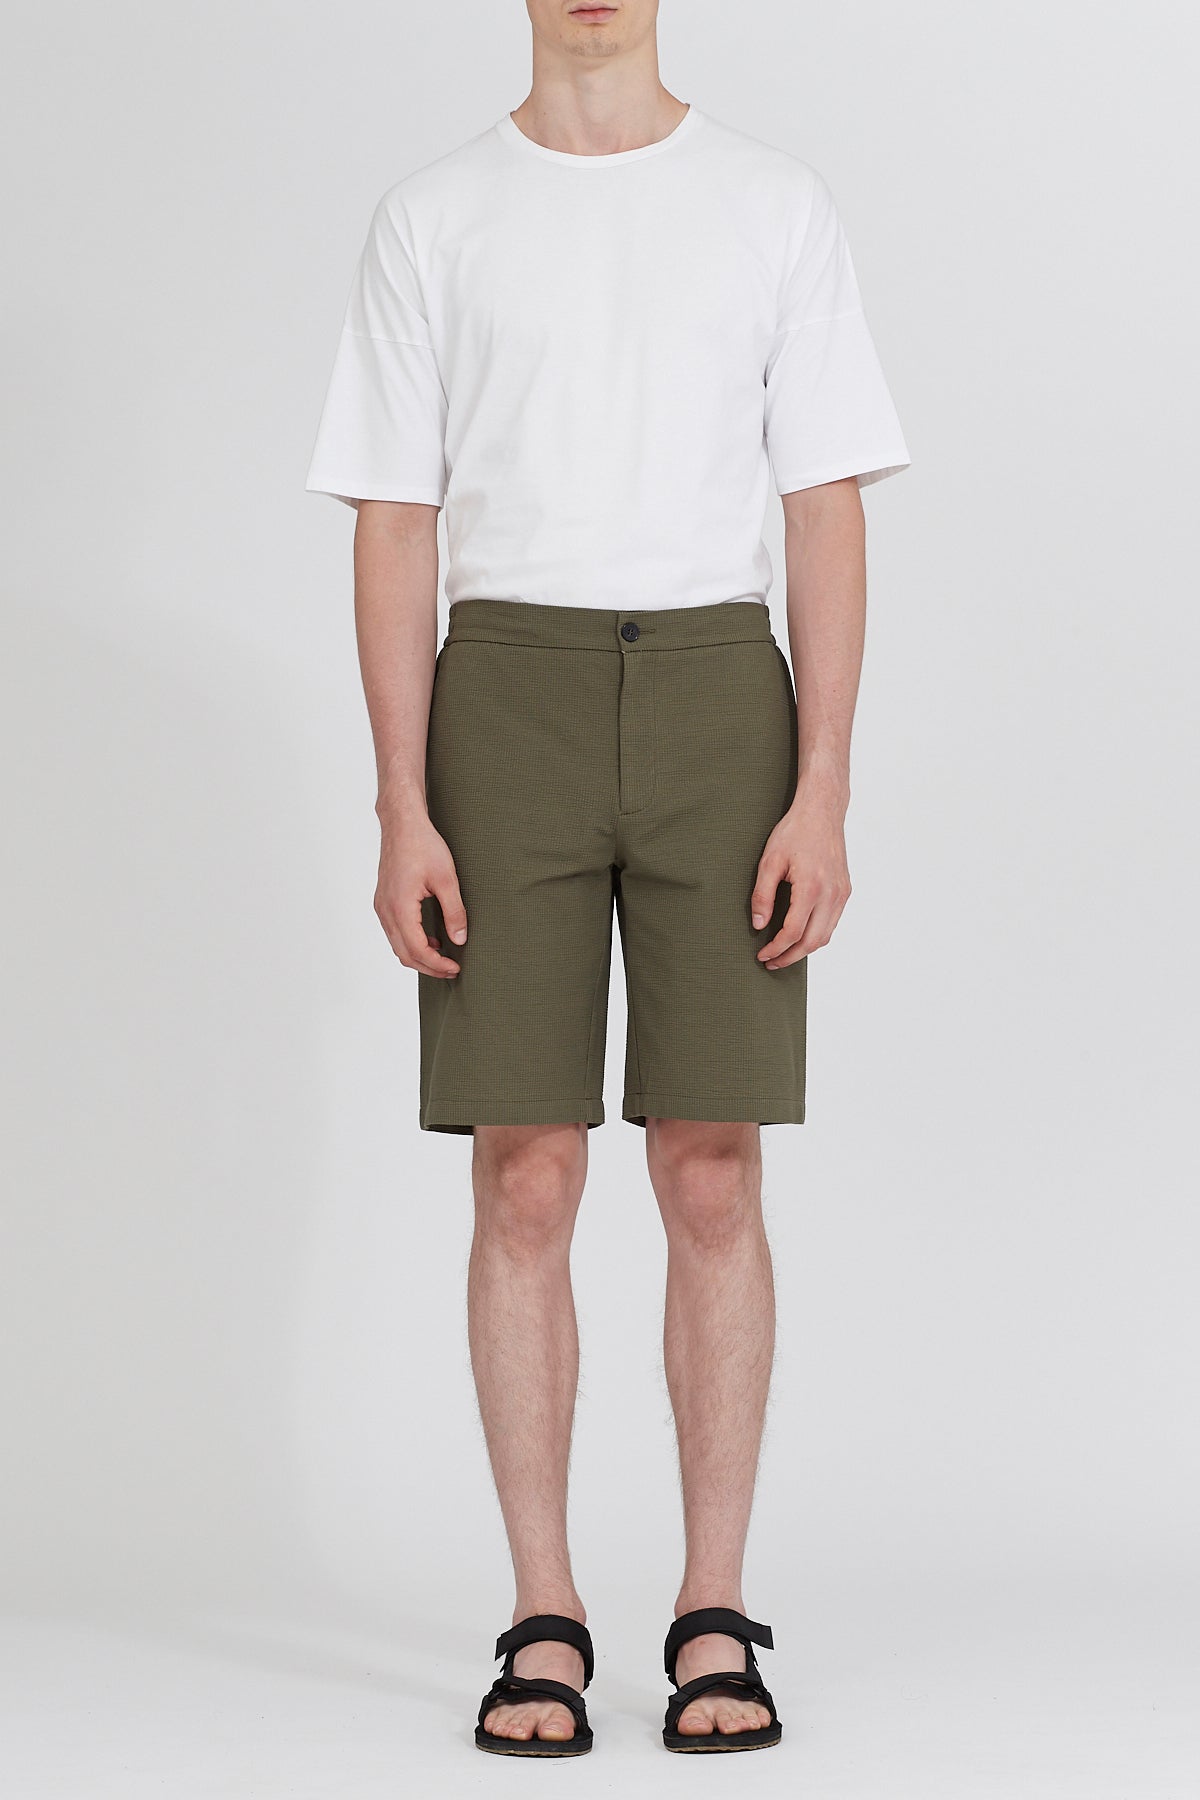 Casual coolmax seersucker shorts